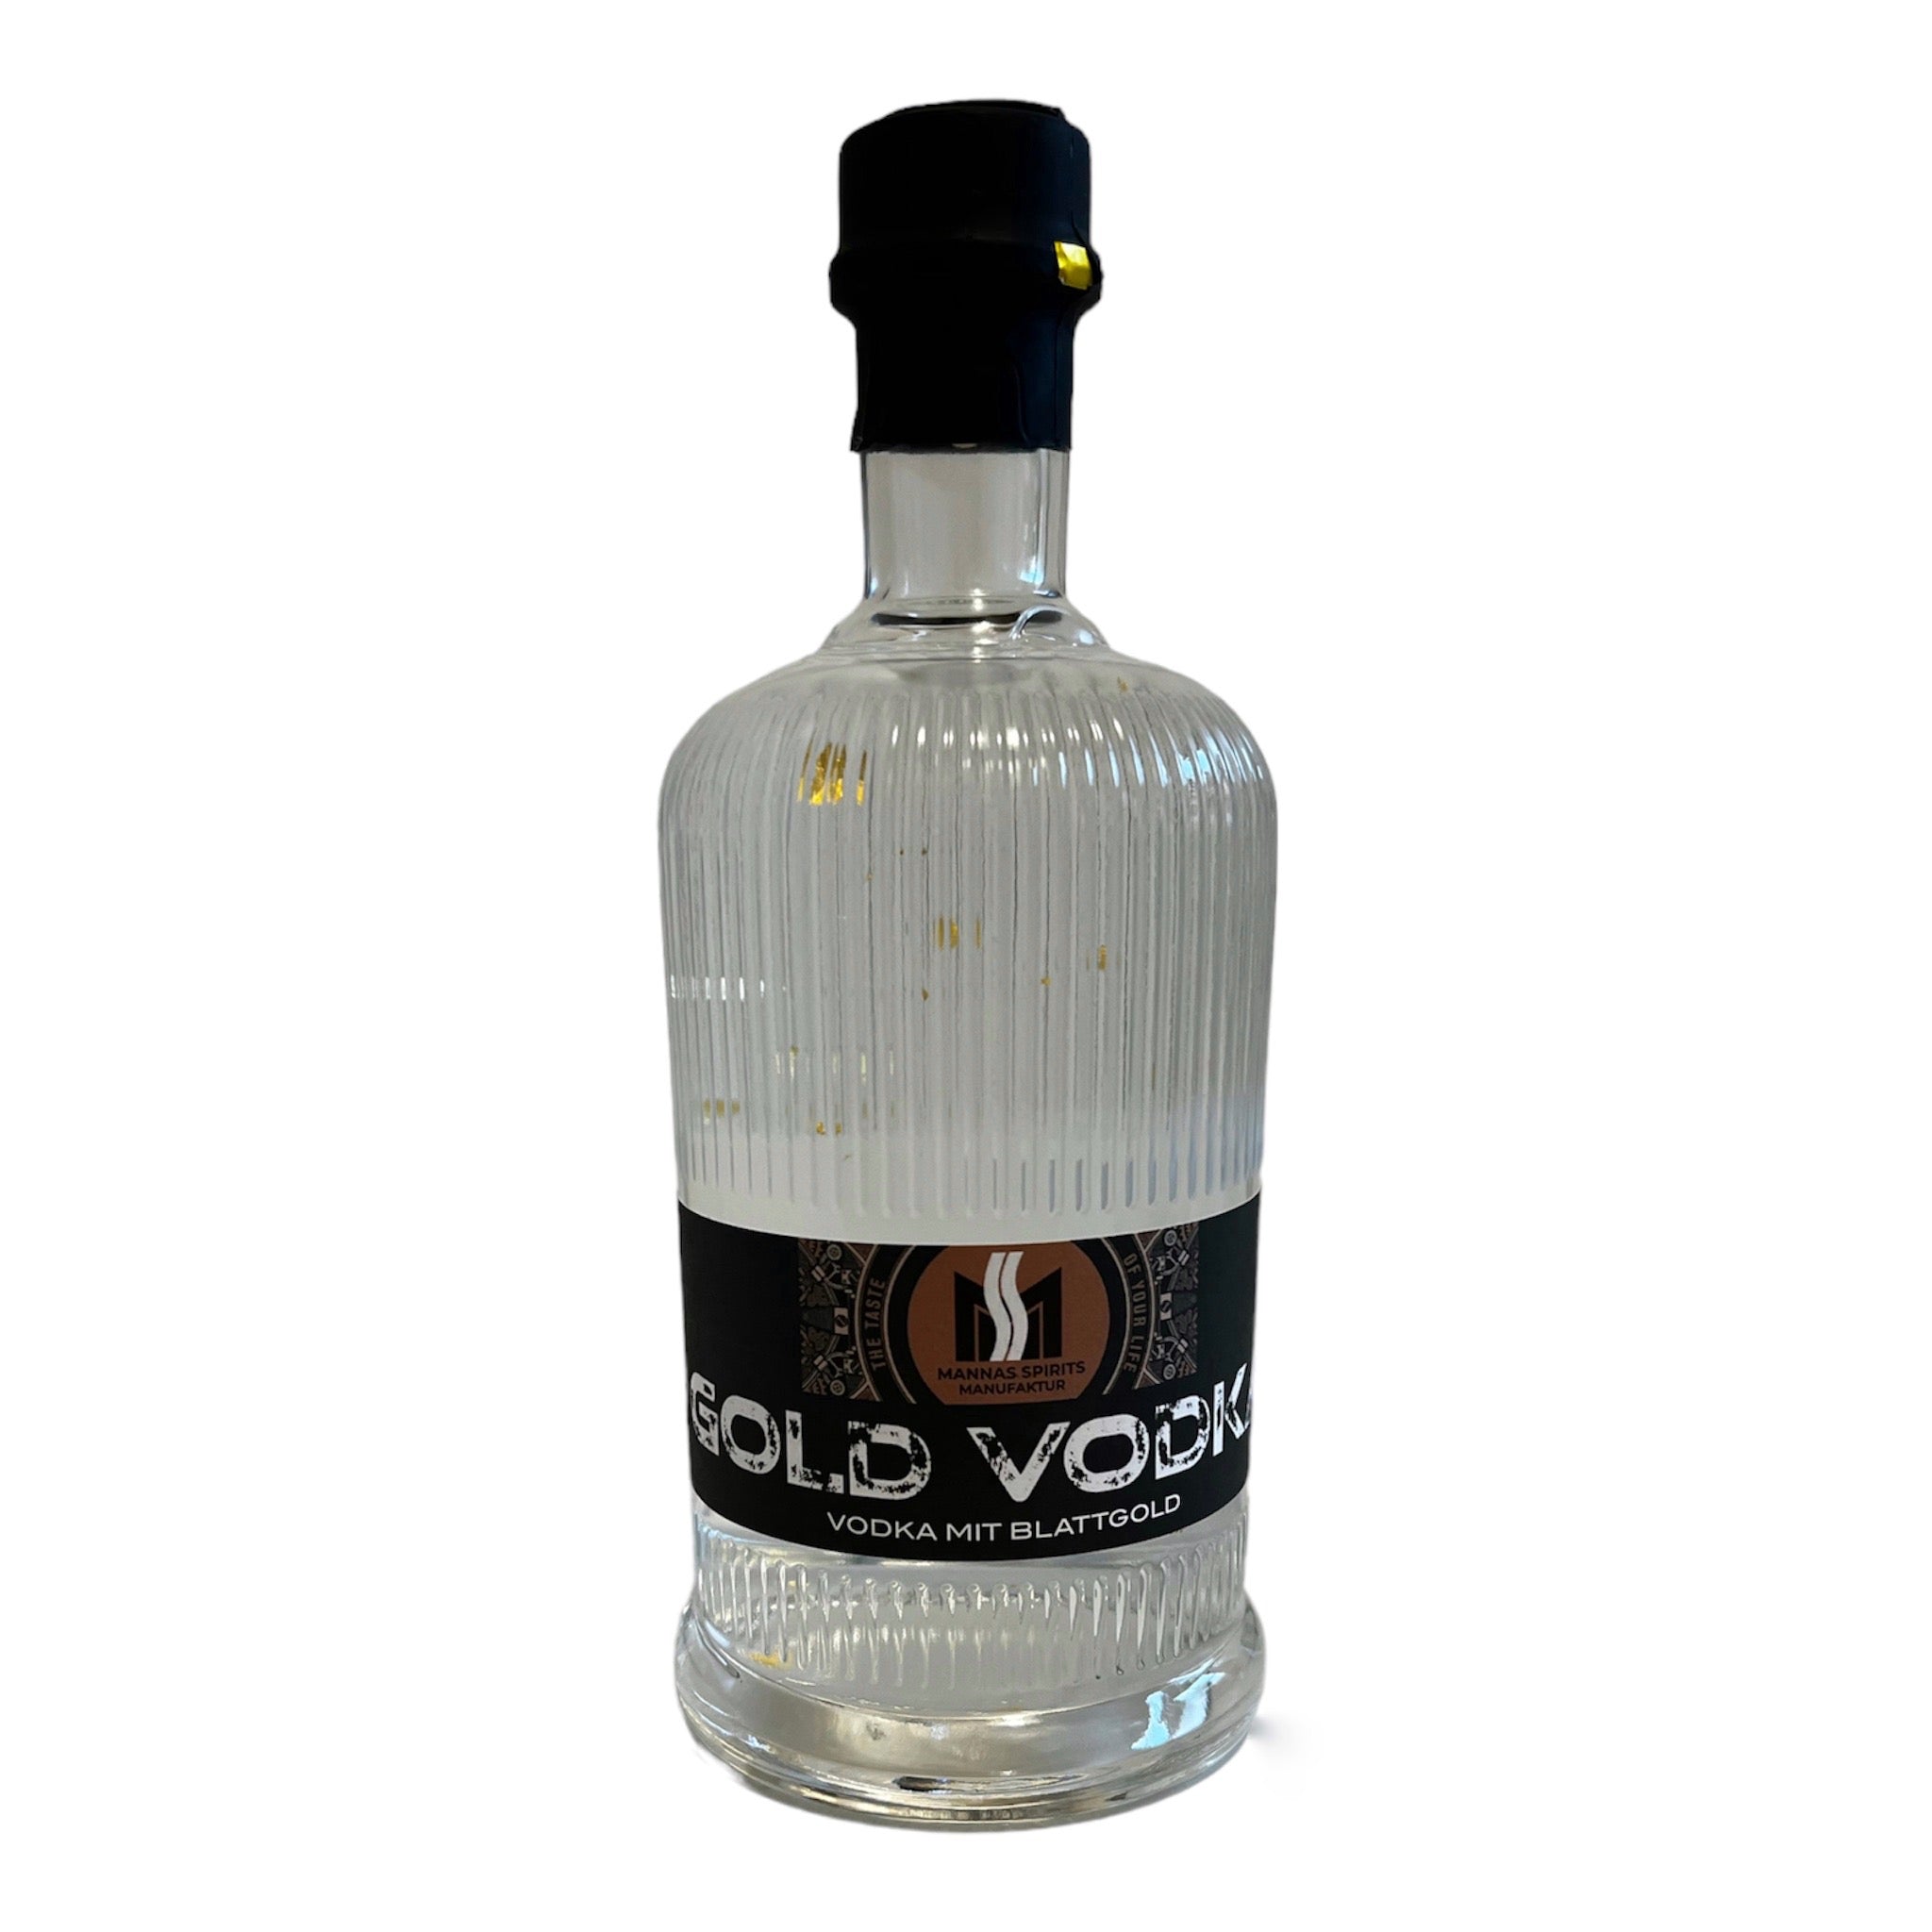 Mannas Gold Vodka - Der Vodka, der dich mit seinem luxuriösen Geschmack und dem funkelnden Blattgold verzaubert.